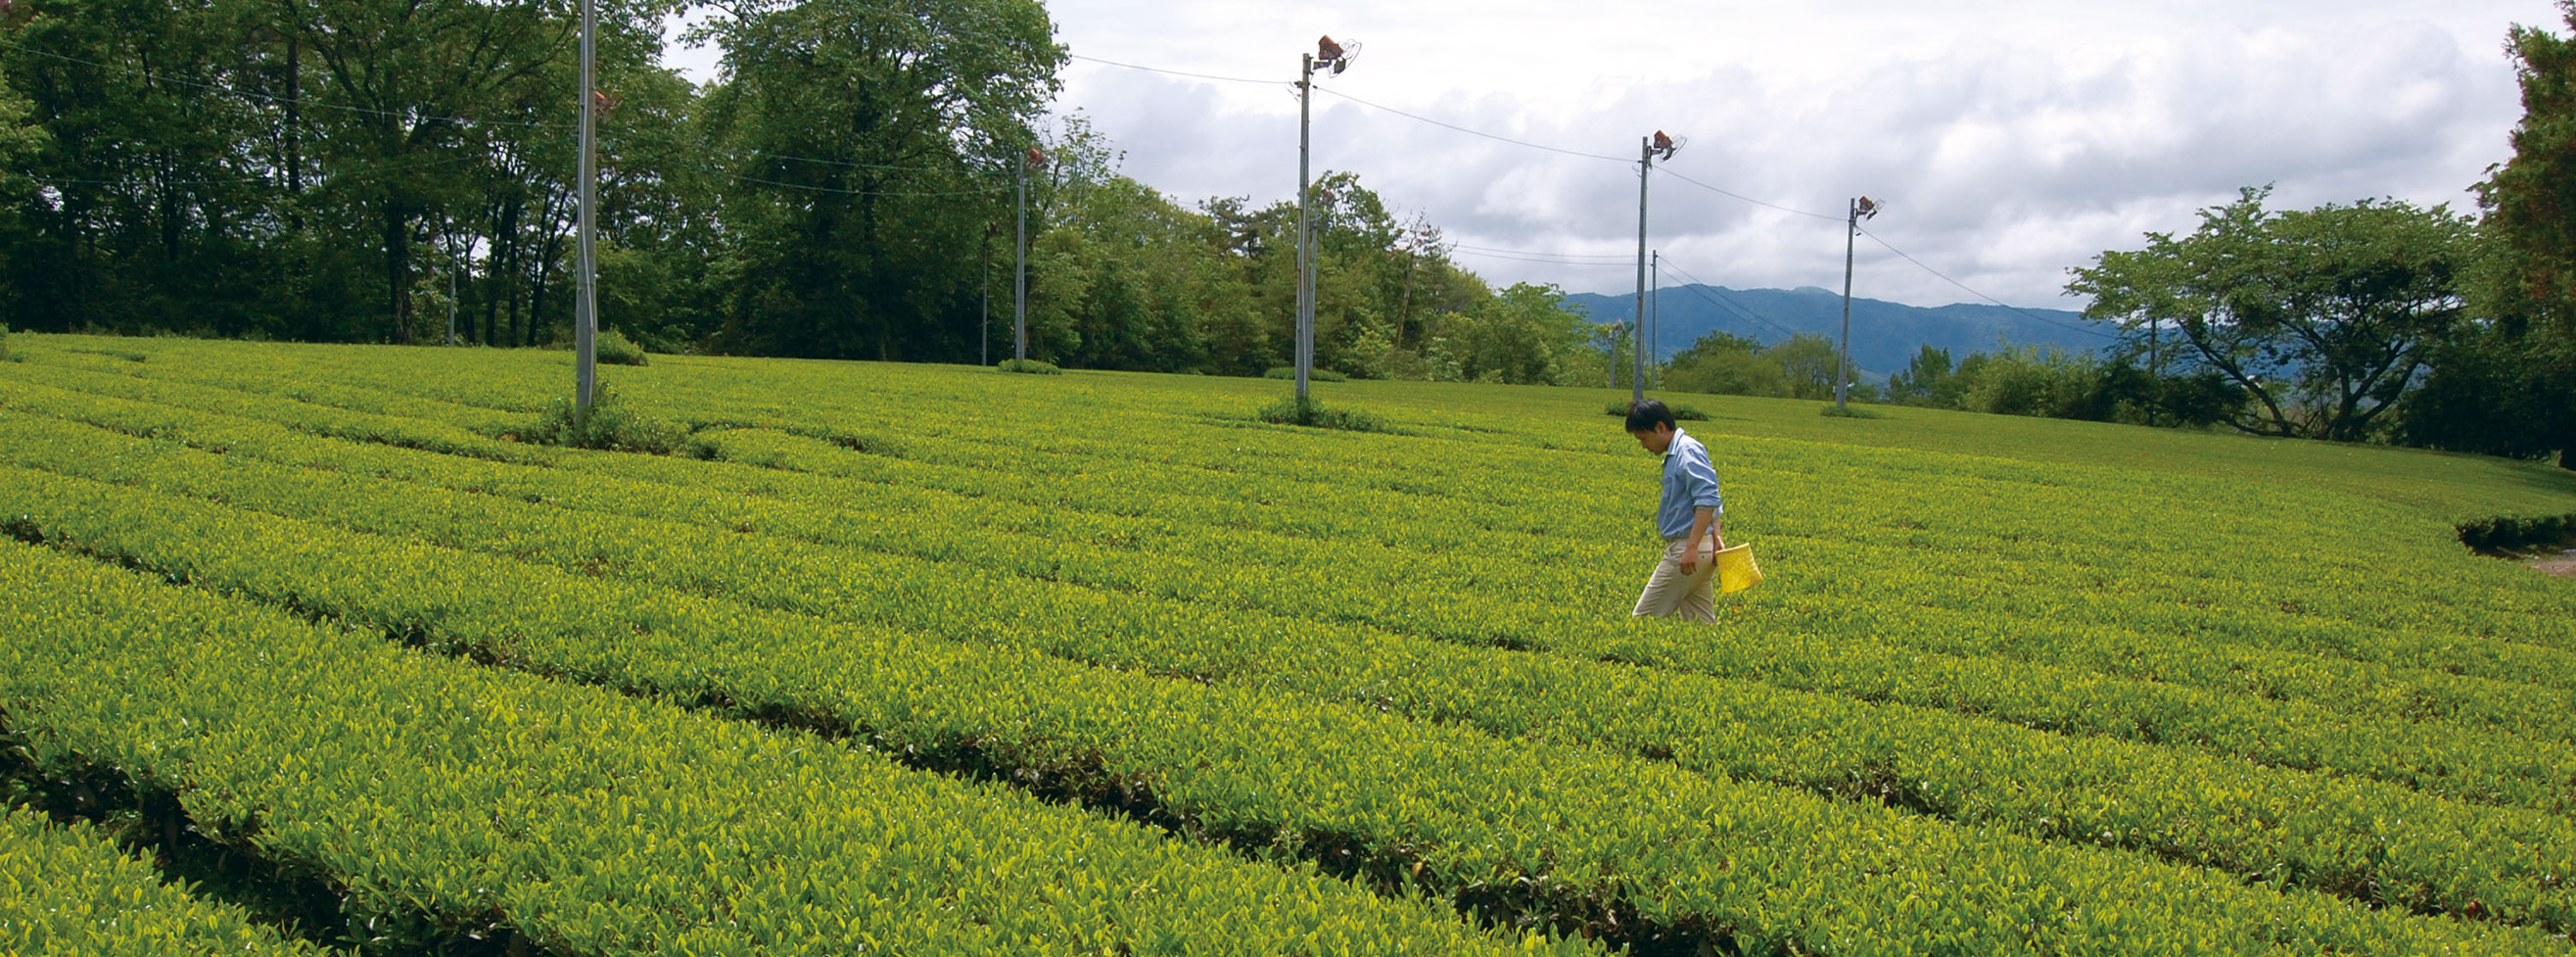 KEIHOKUプライベートブランド 有機栽培茶